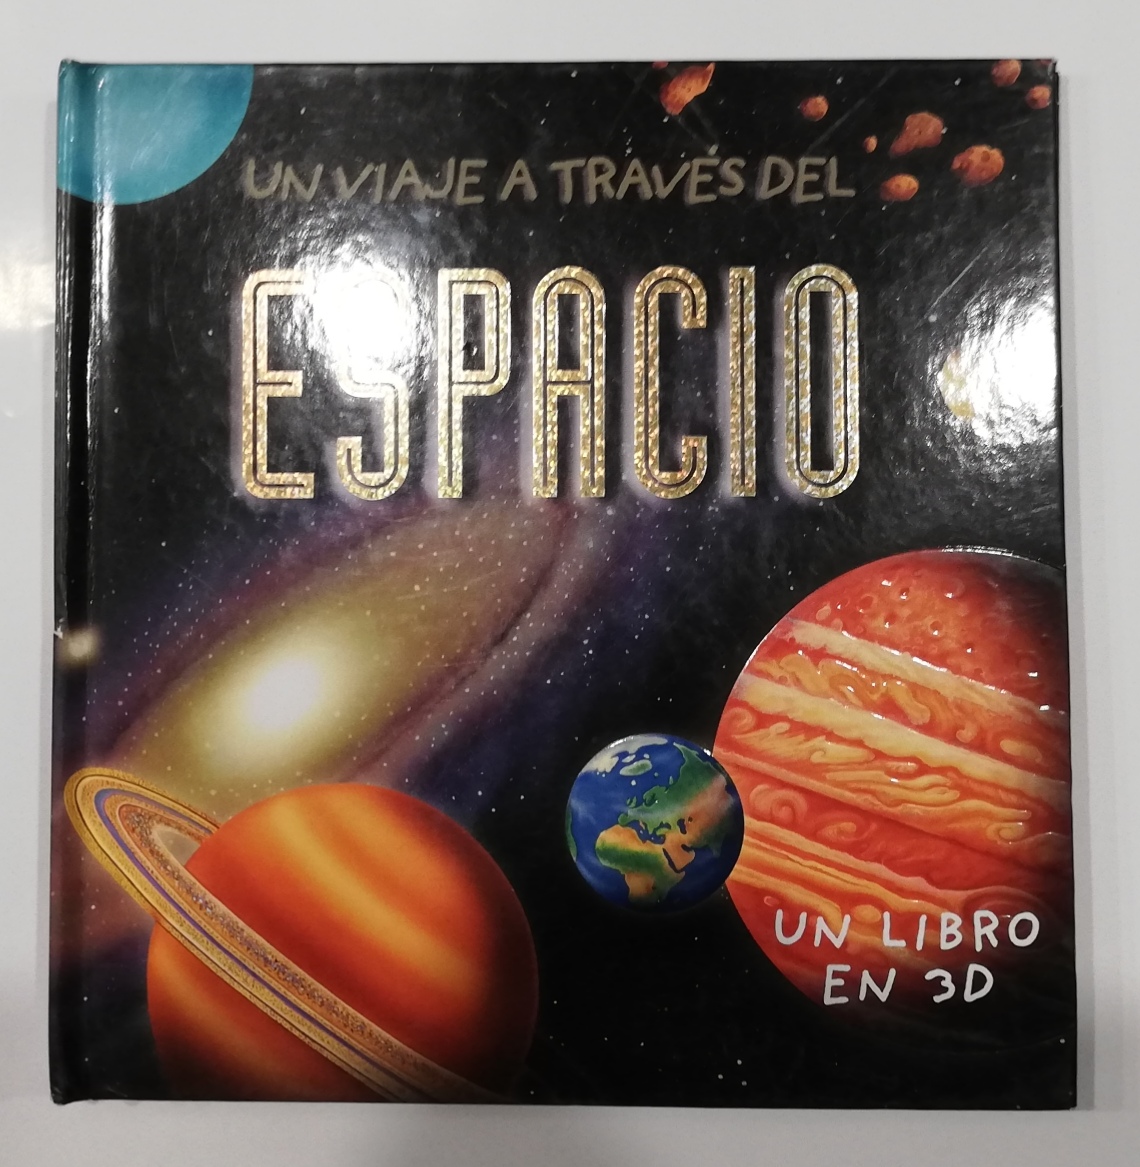 Un Viaje a través del Espacio. Un libro en 3D. Cuento desplegable. Beascoa 2012